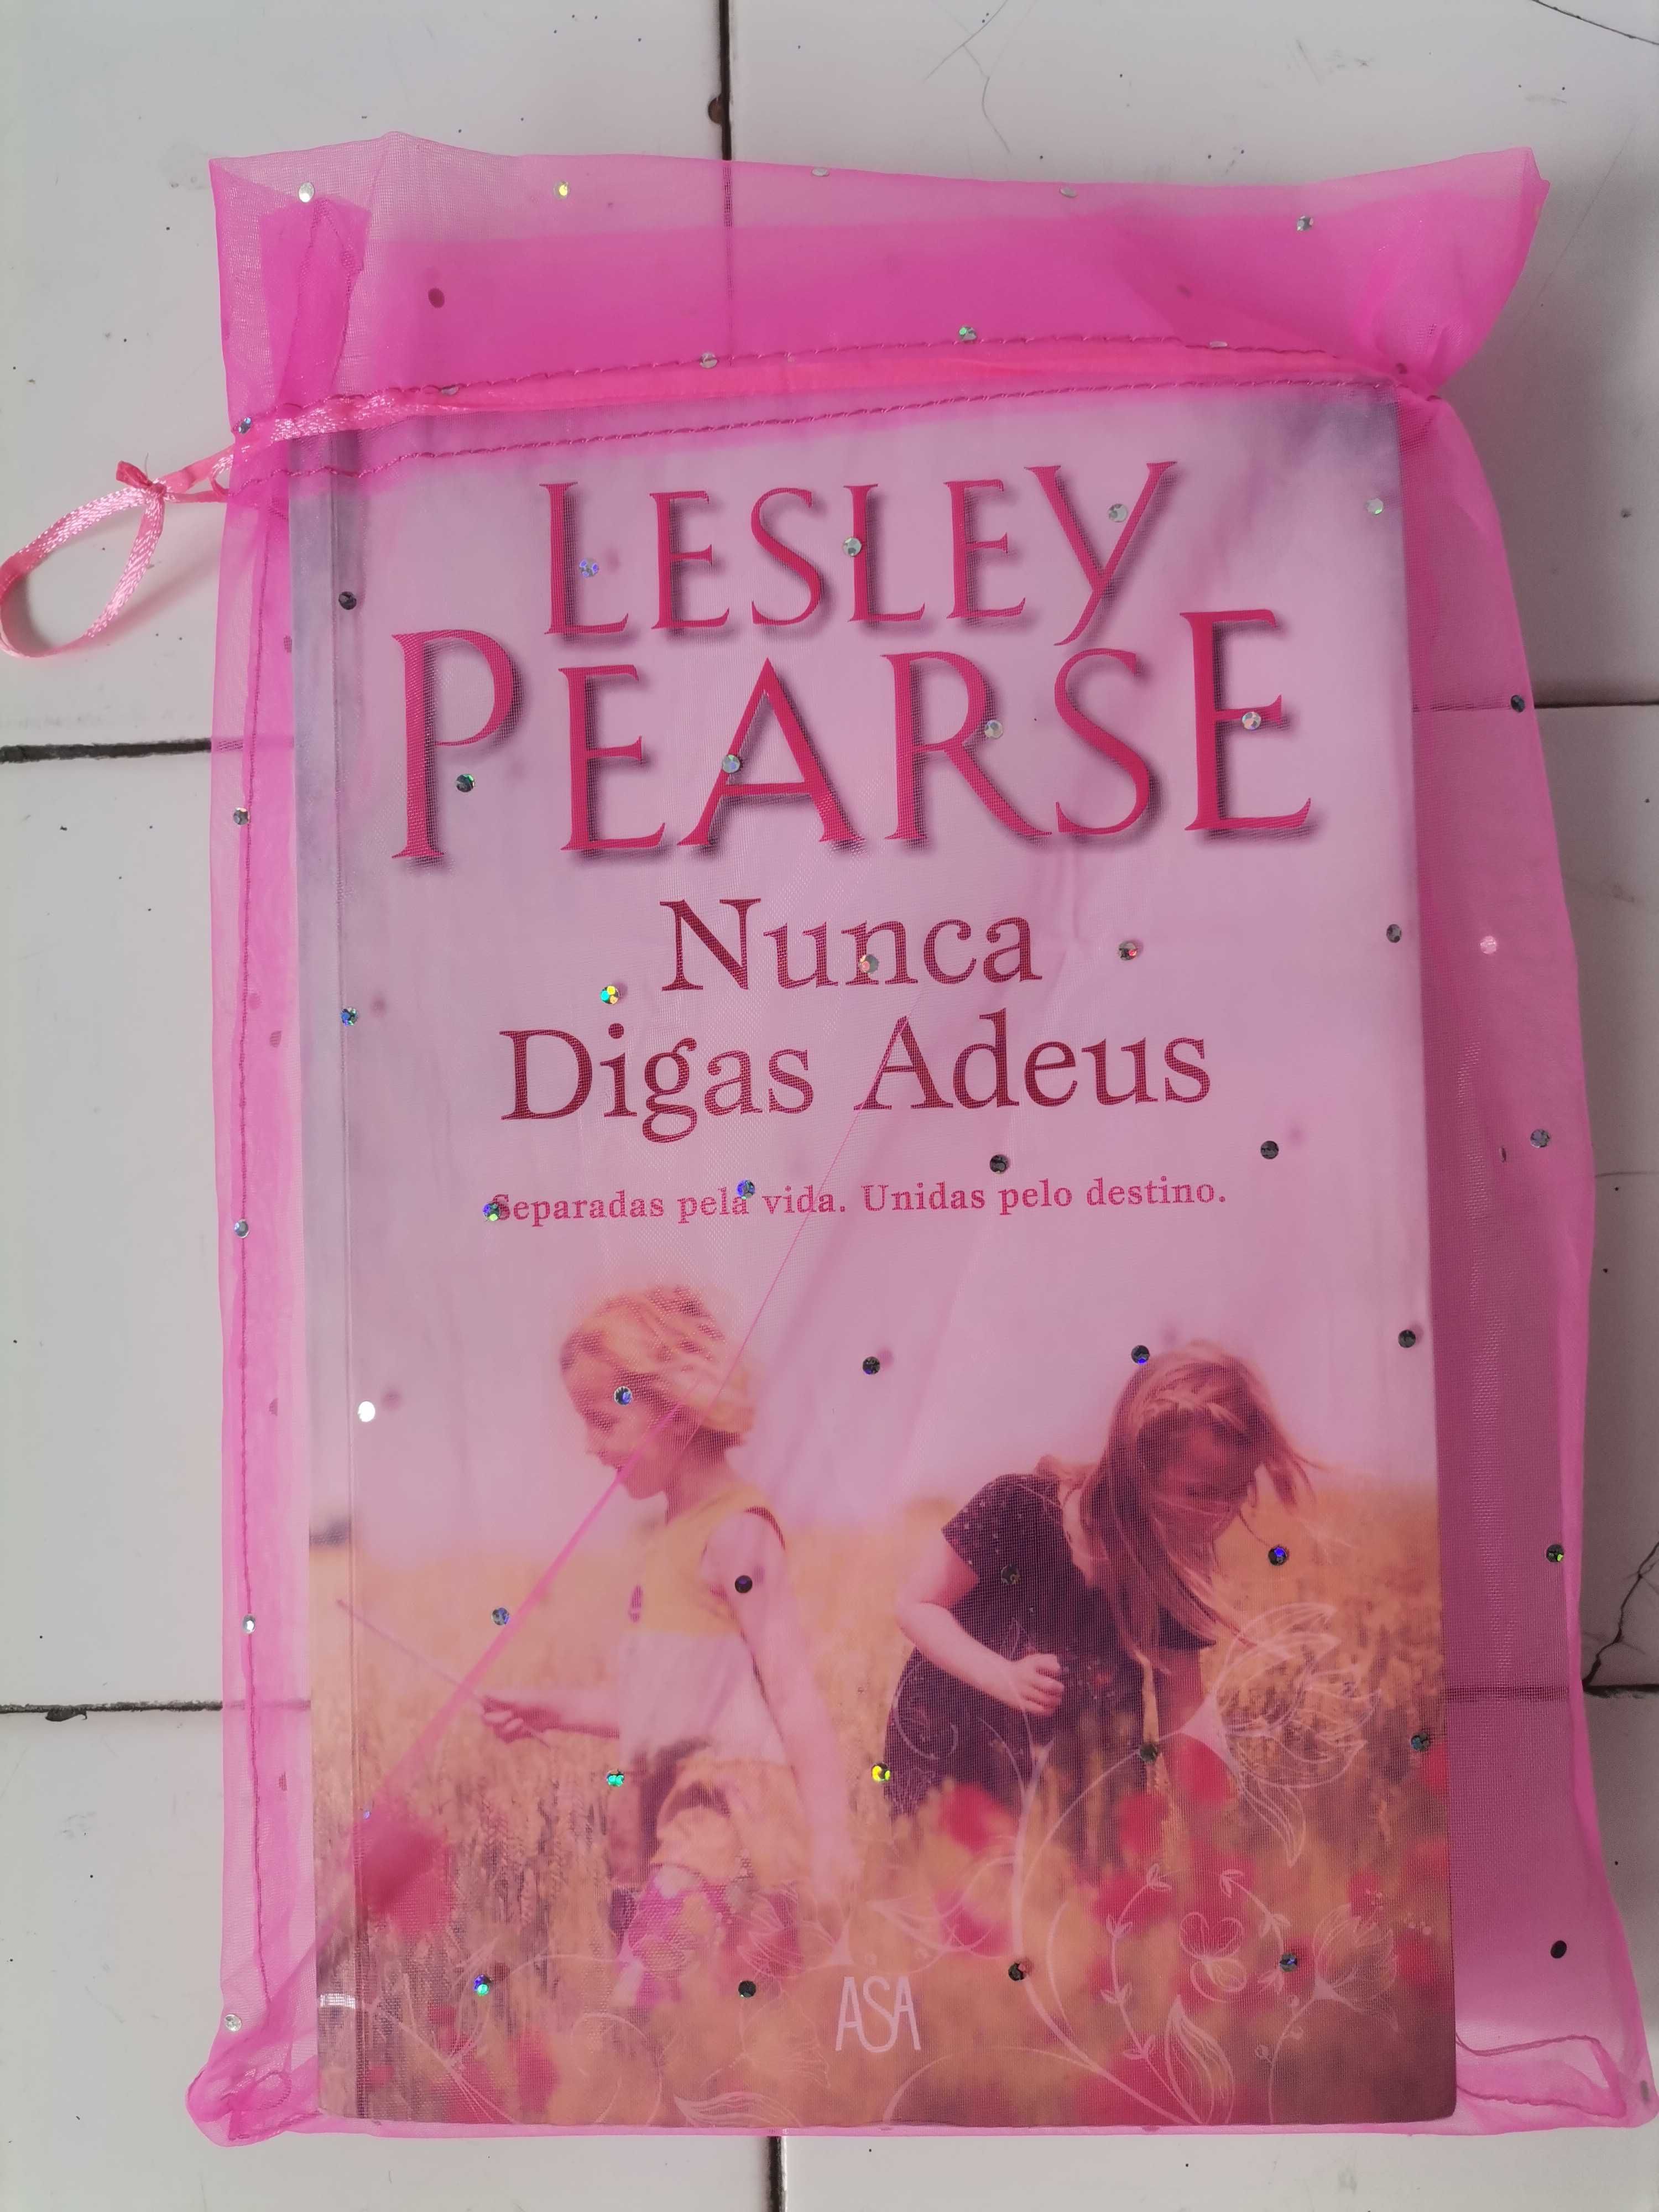 "Nunca digas adeus" - Lesley Pearse